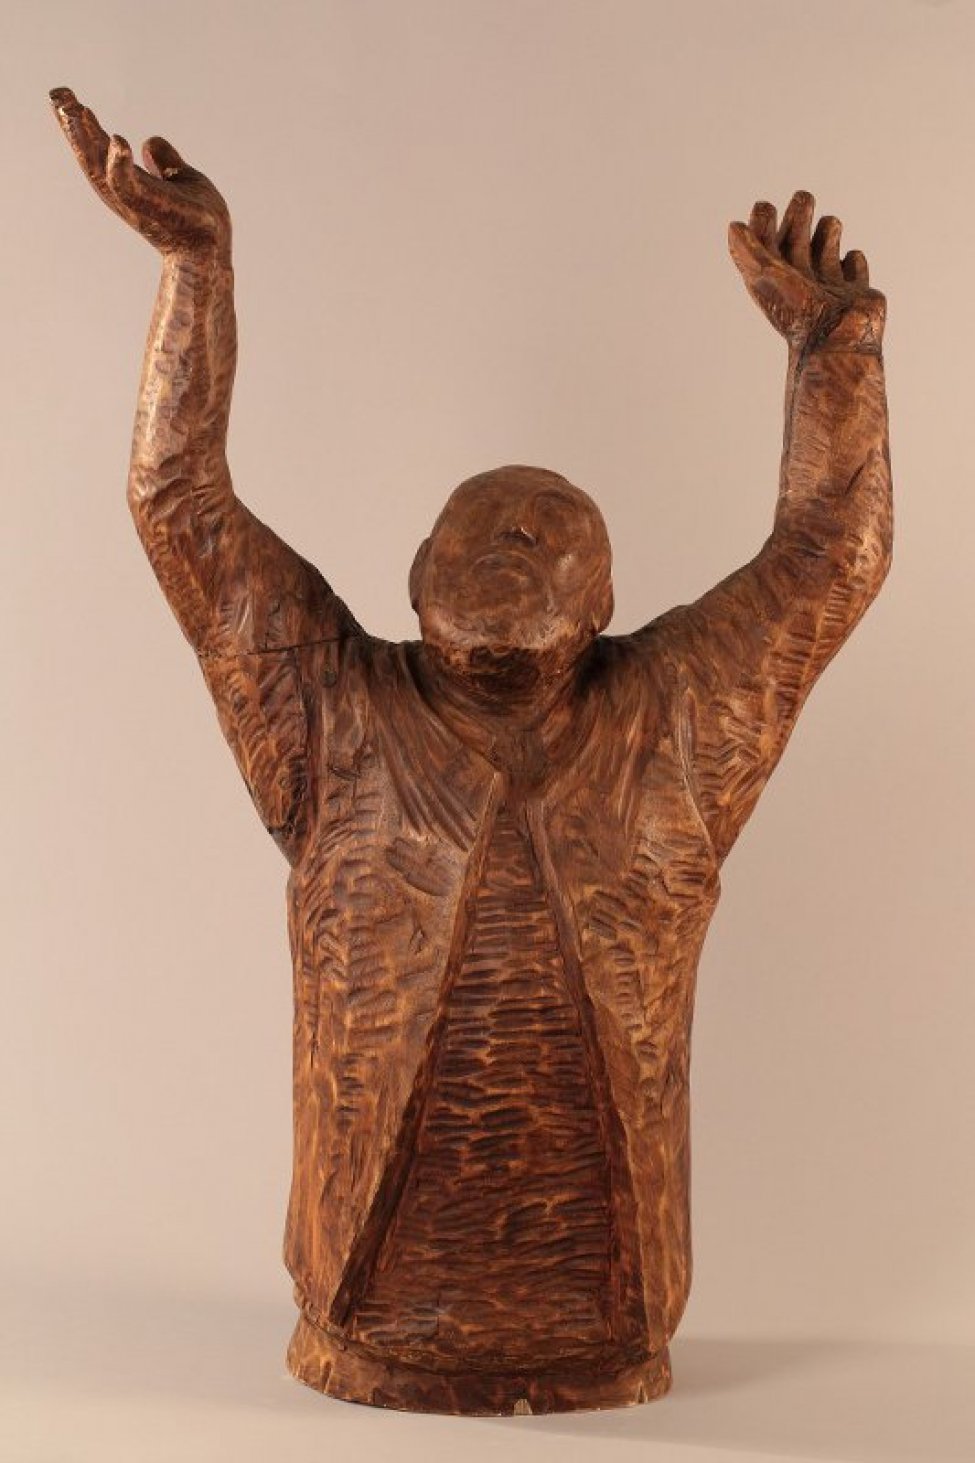 Победренное изображение бородатого мужчины с высоко поднятыми руками и раскрытыми вверх ладонями. Голова запрокинута назад и немного повернута вправо. У шеи – ворот рубахи, поверх – жилет, расширяющийся книзу.